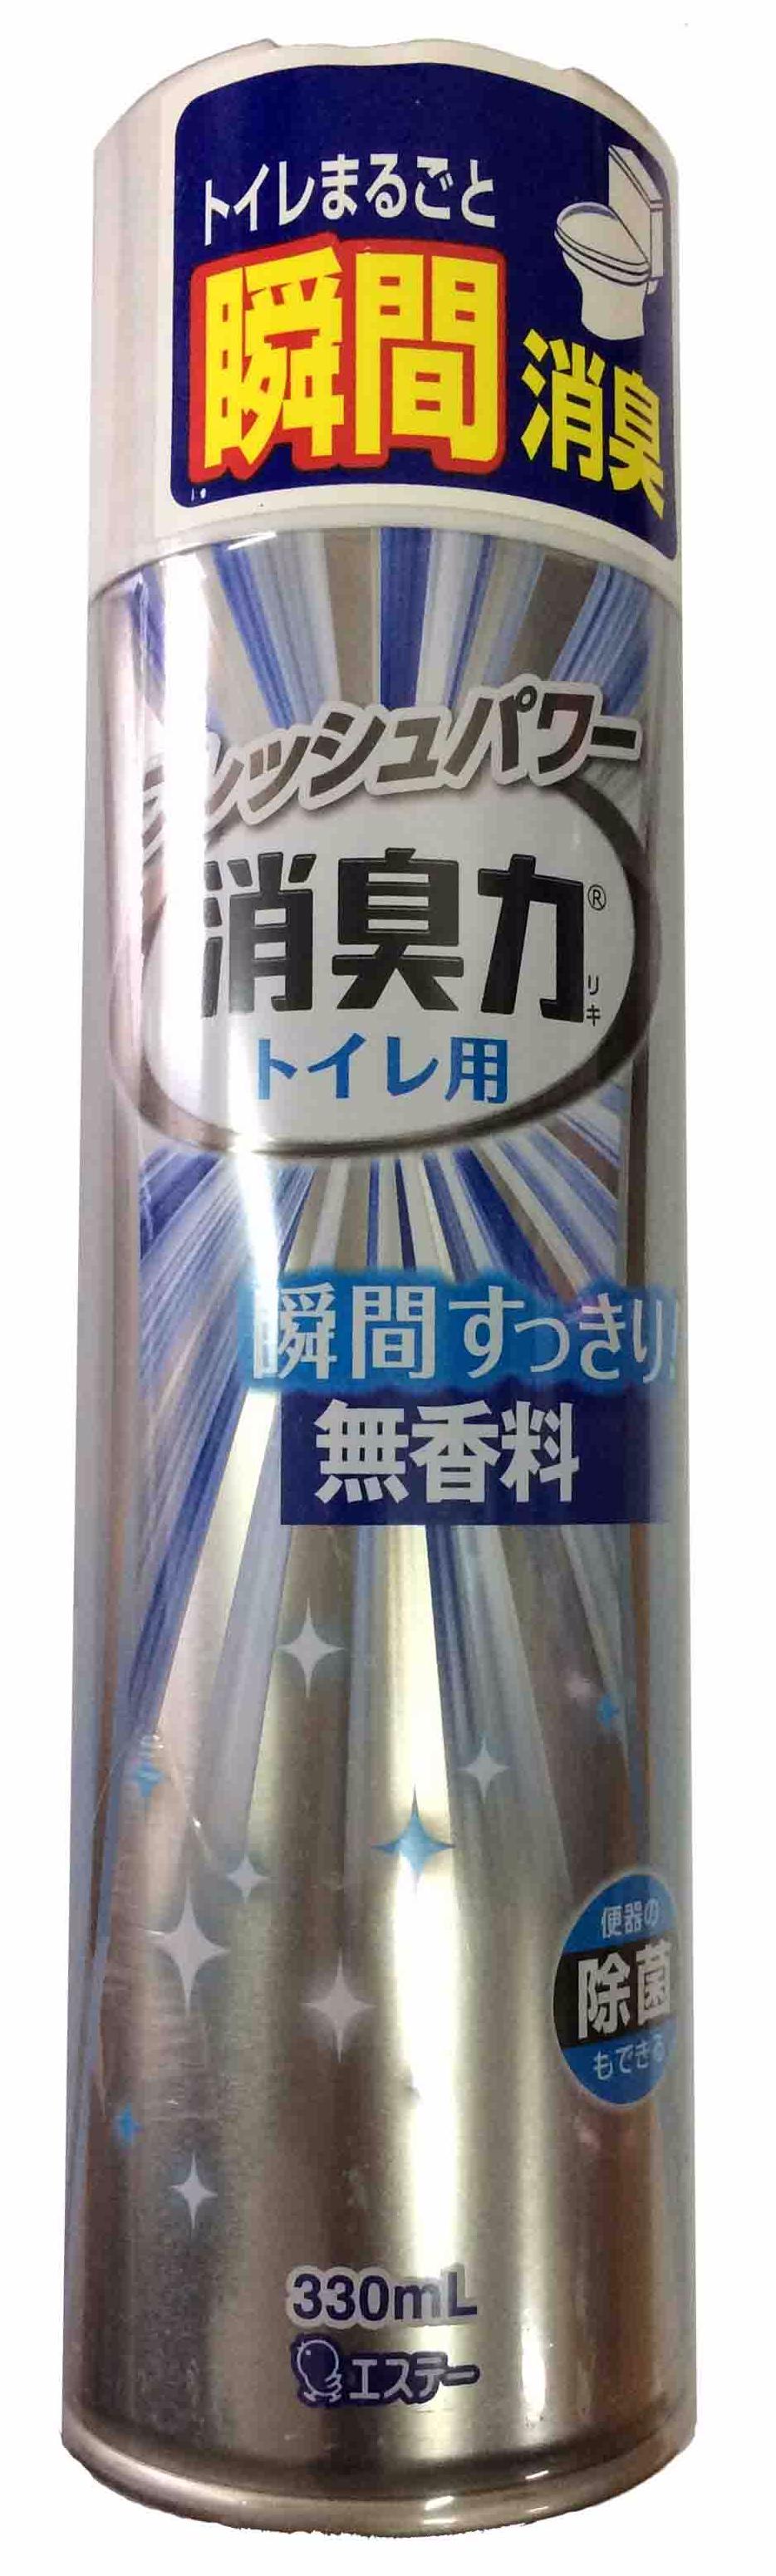 ST Shoushuuriki Освежитель воздуха антибактериальный для туалета без аромата (нейтрализатор) 330 мл